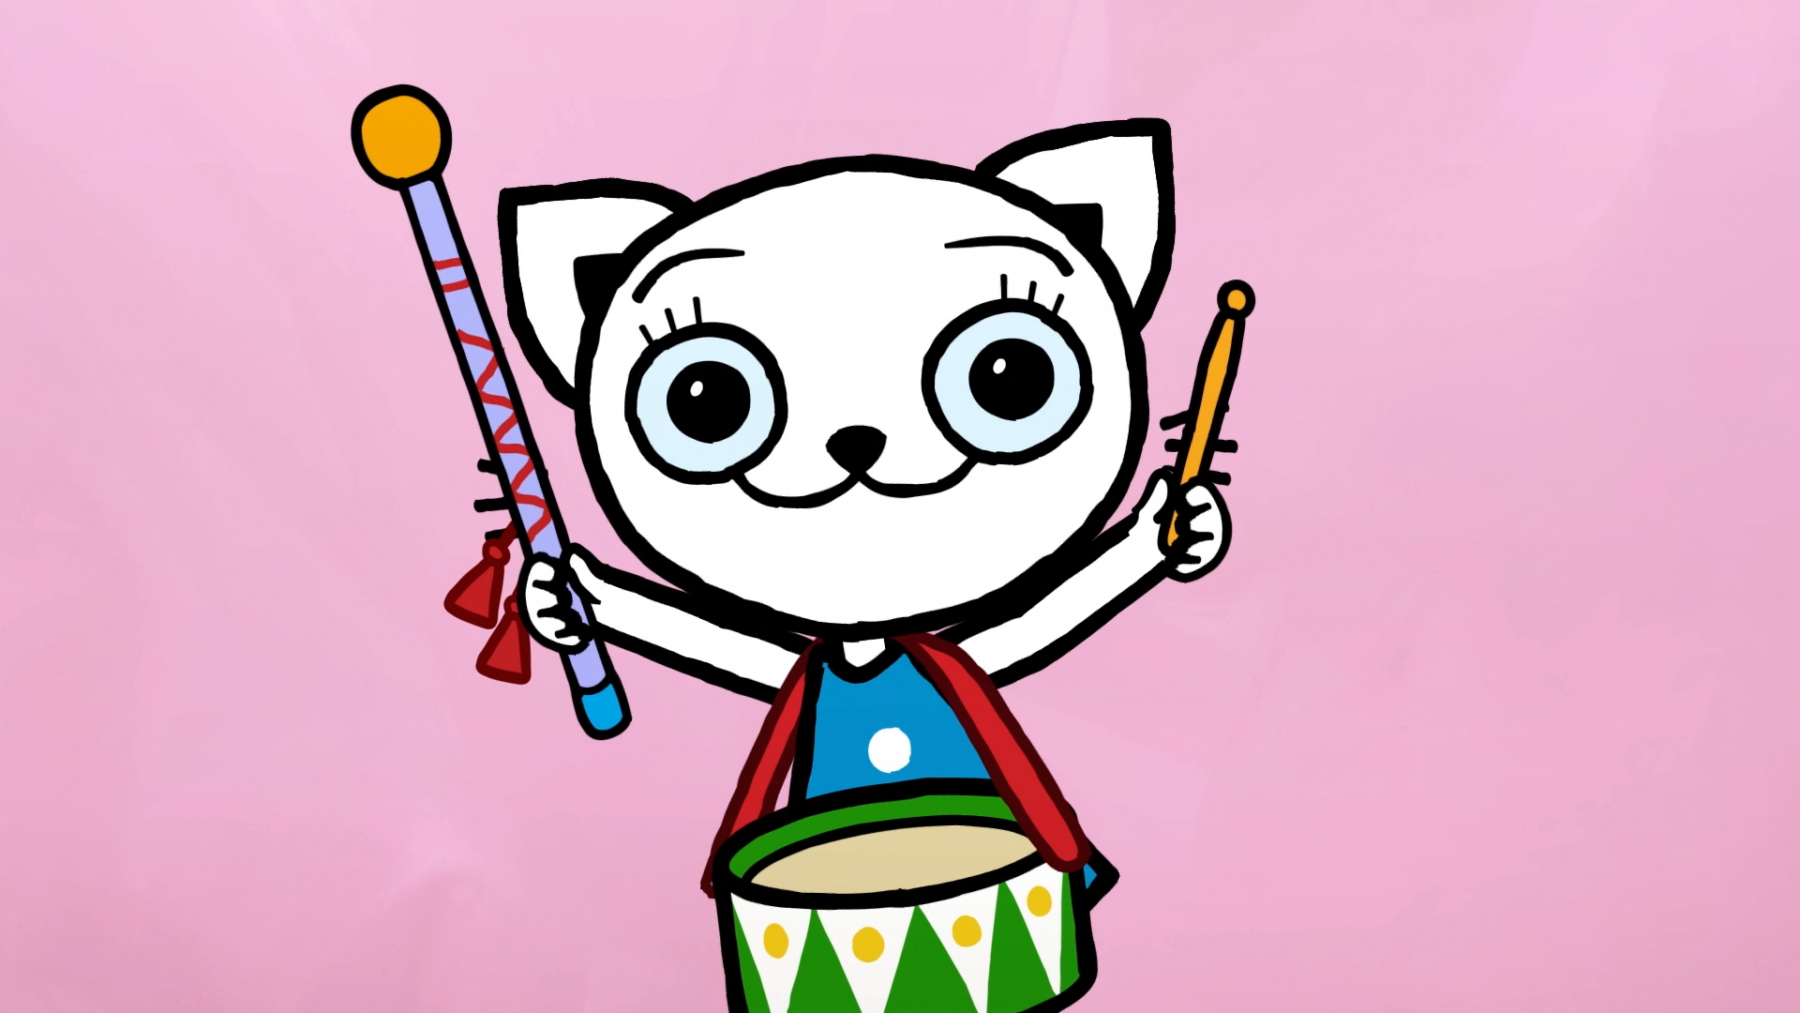 Kadr z bajki przedstawiający białego kotka grającego na bębnie.